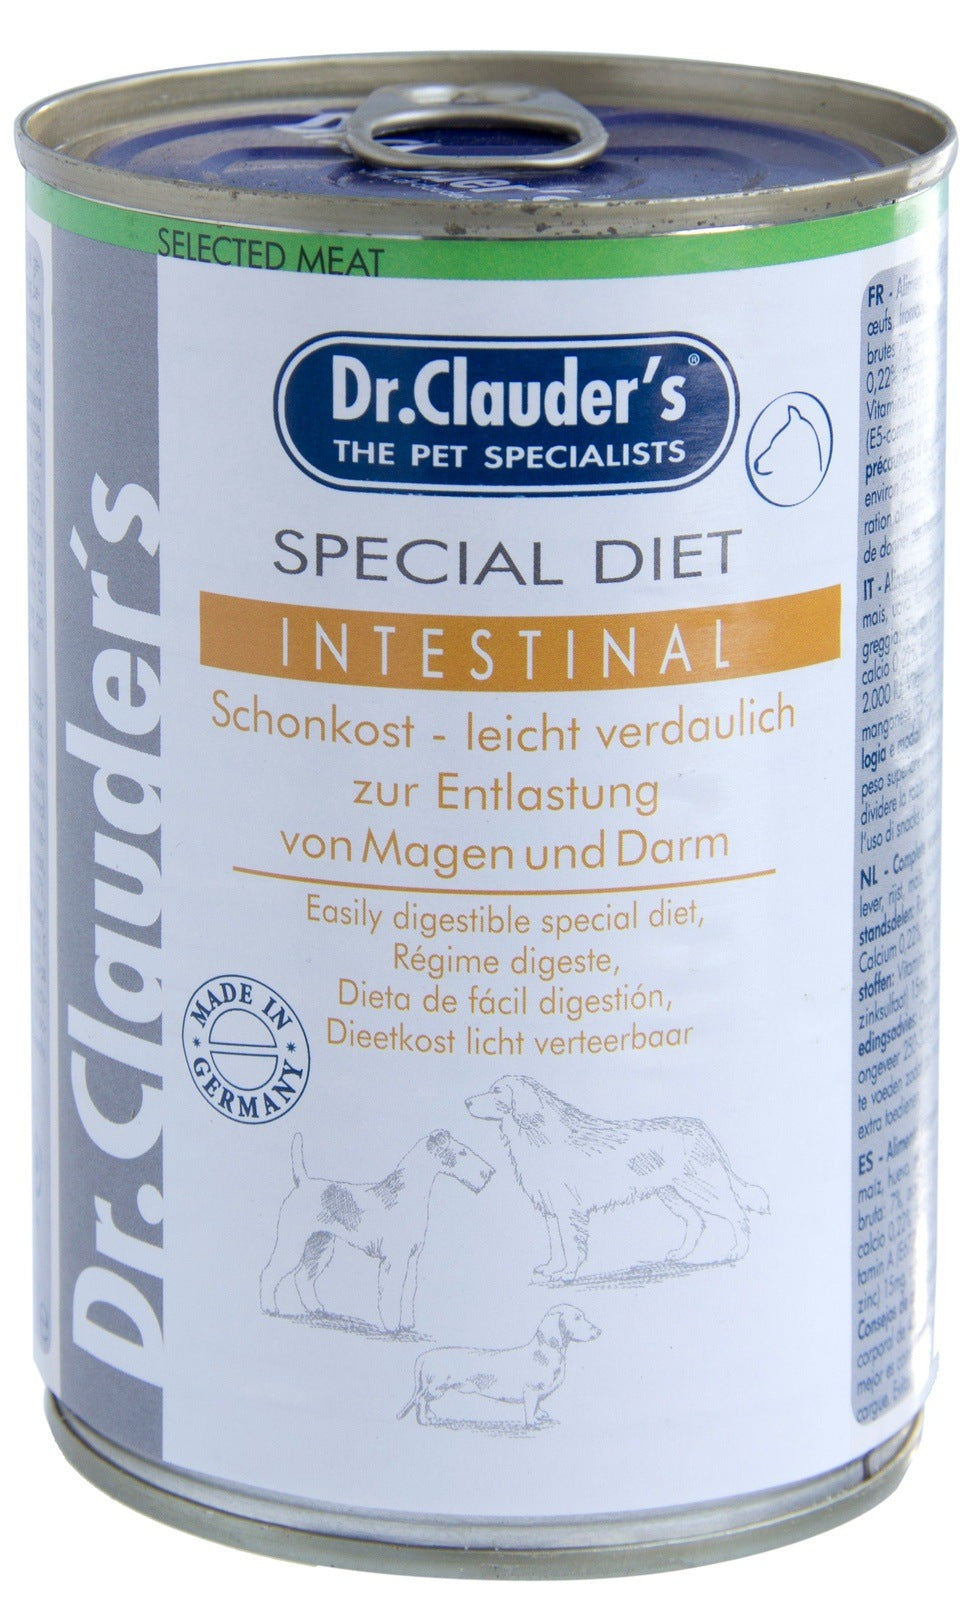 Artikel mit dem Namen Dr.Clauder's Special Diet Intestinal im Shop von zoo.de , dem Onlineshop für nachhaltiges Hundefutter und Katzenfutter.